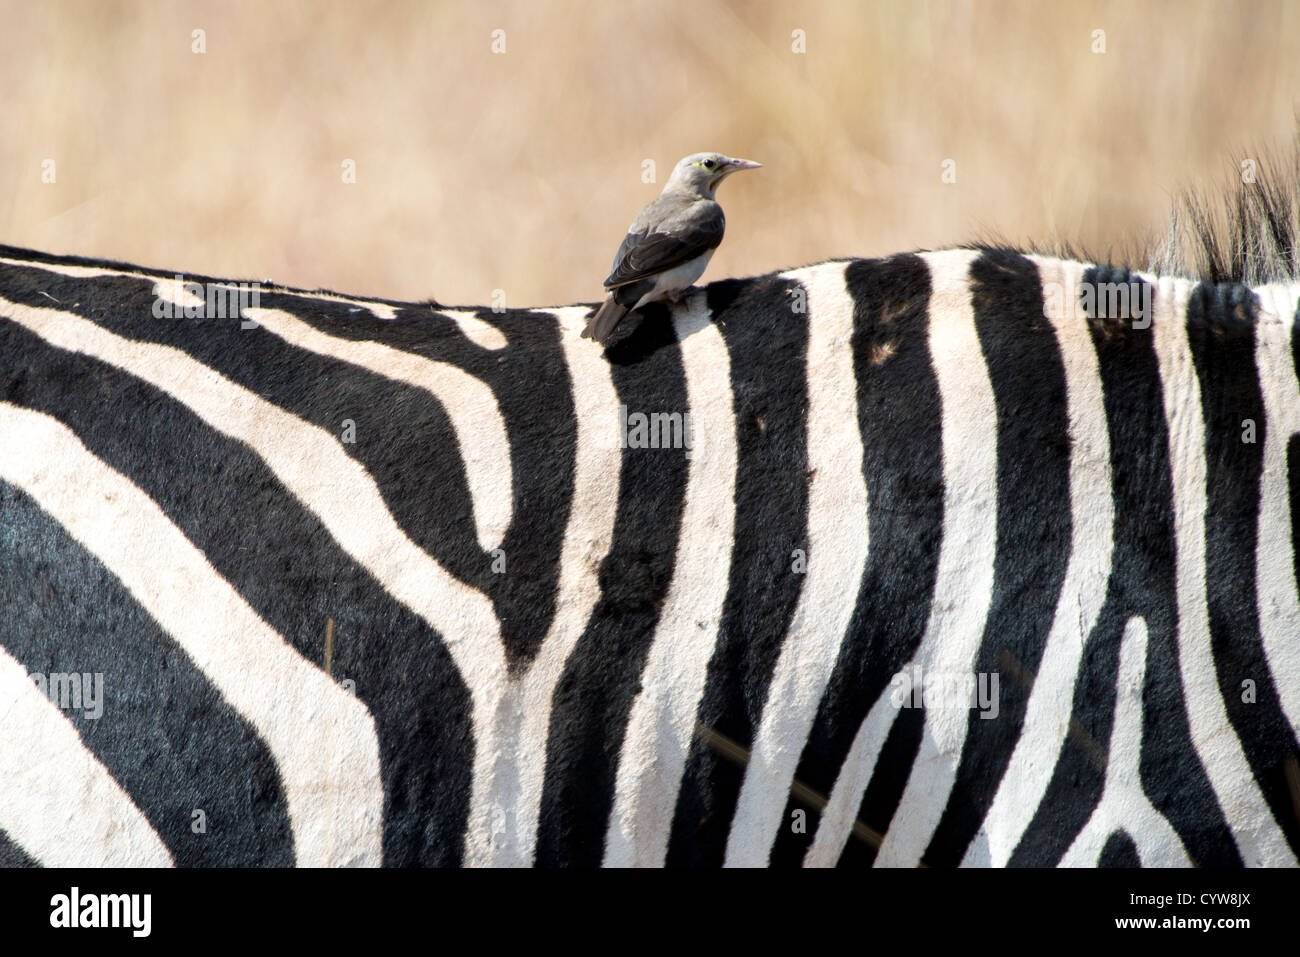 Der Tarangire National Park, Tansania - ein kleiner Vogel sitzt auf dem Rücken eines Zebra in der Tarangire National Park im Norden von Tansania, nicht weit von den Ngorongoro Krater und die Serengeti. Stockfoto